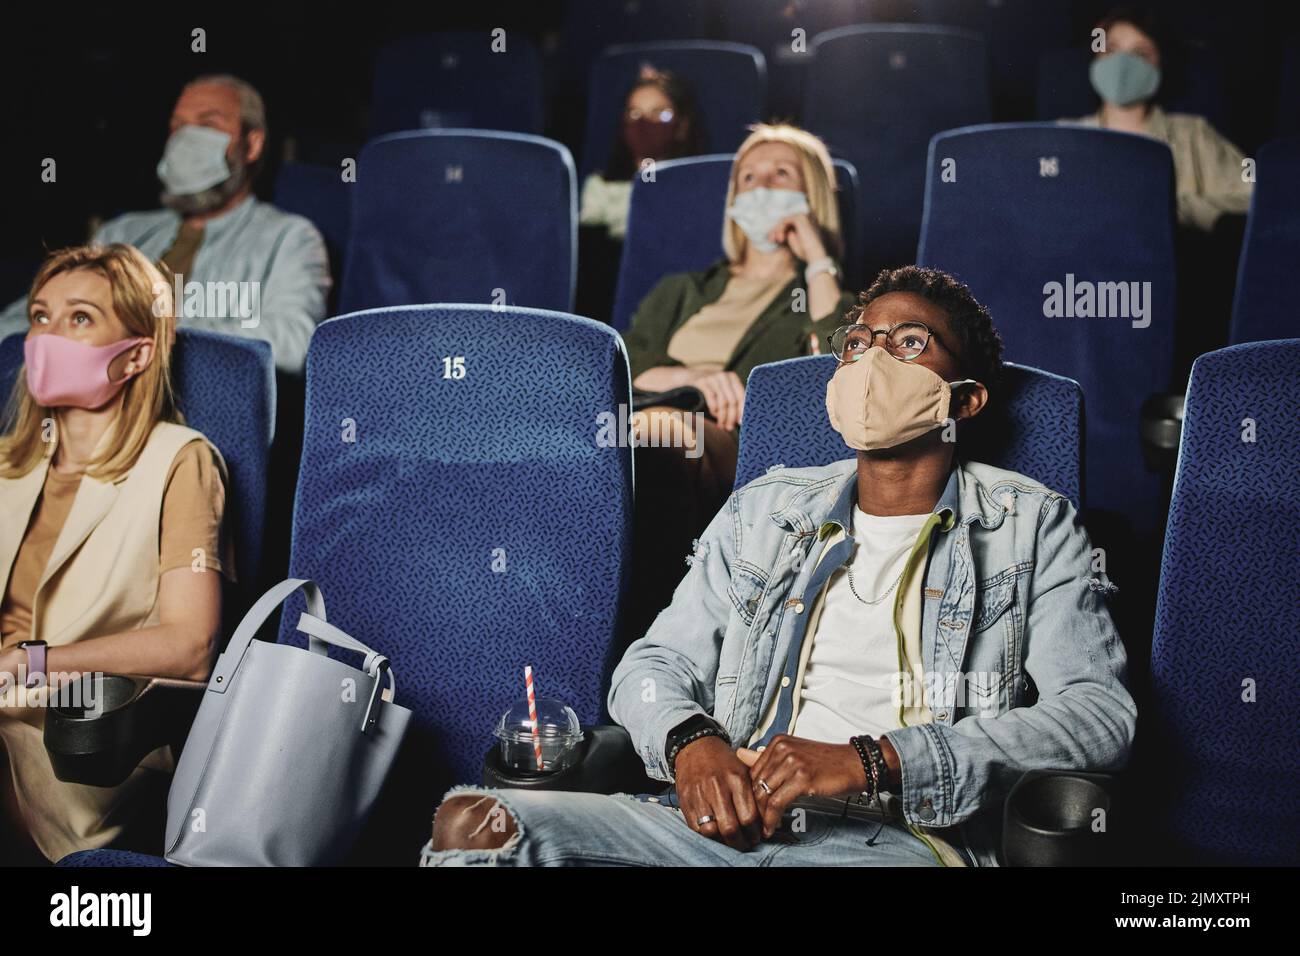 Grupo étnicamente diverso de personas que usan máscaras protectoras en las caras viendo películas en el cine, concepto de cuarentena Foto de stock